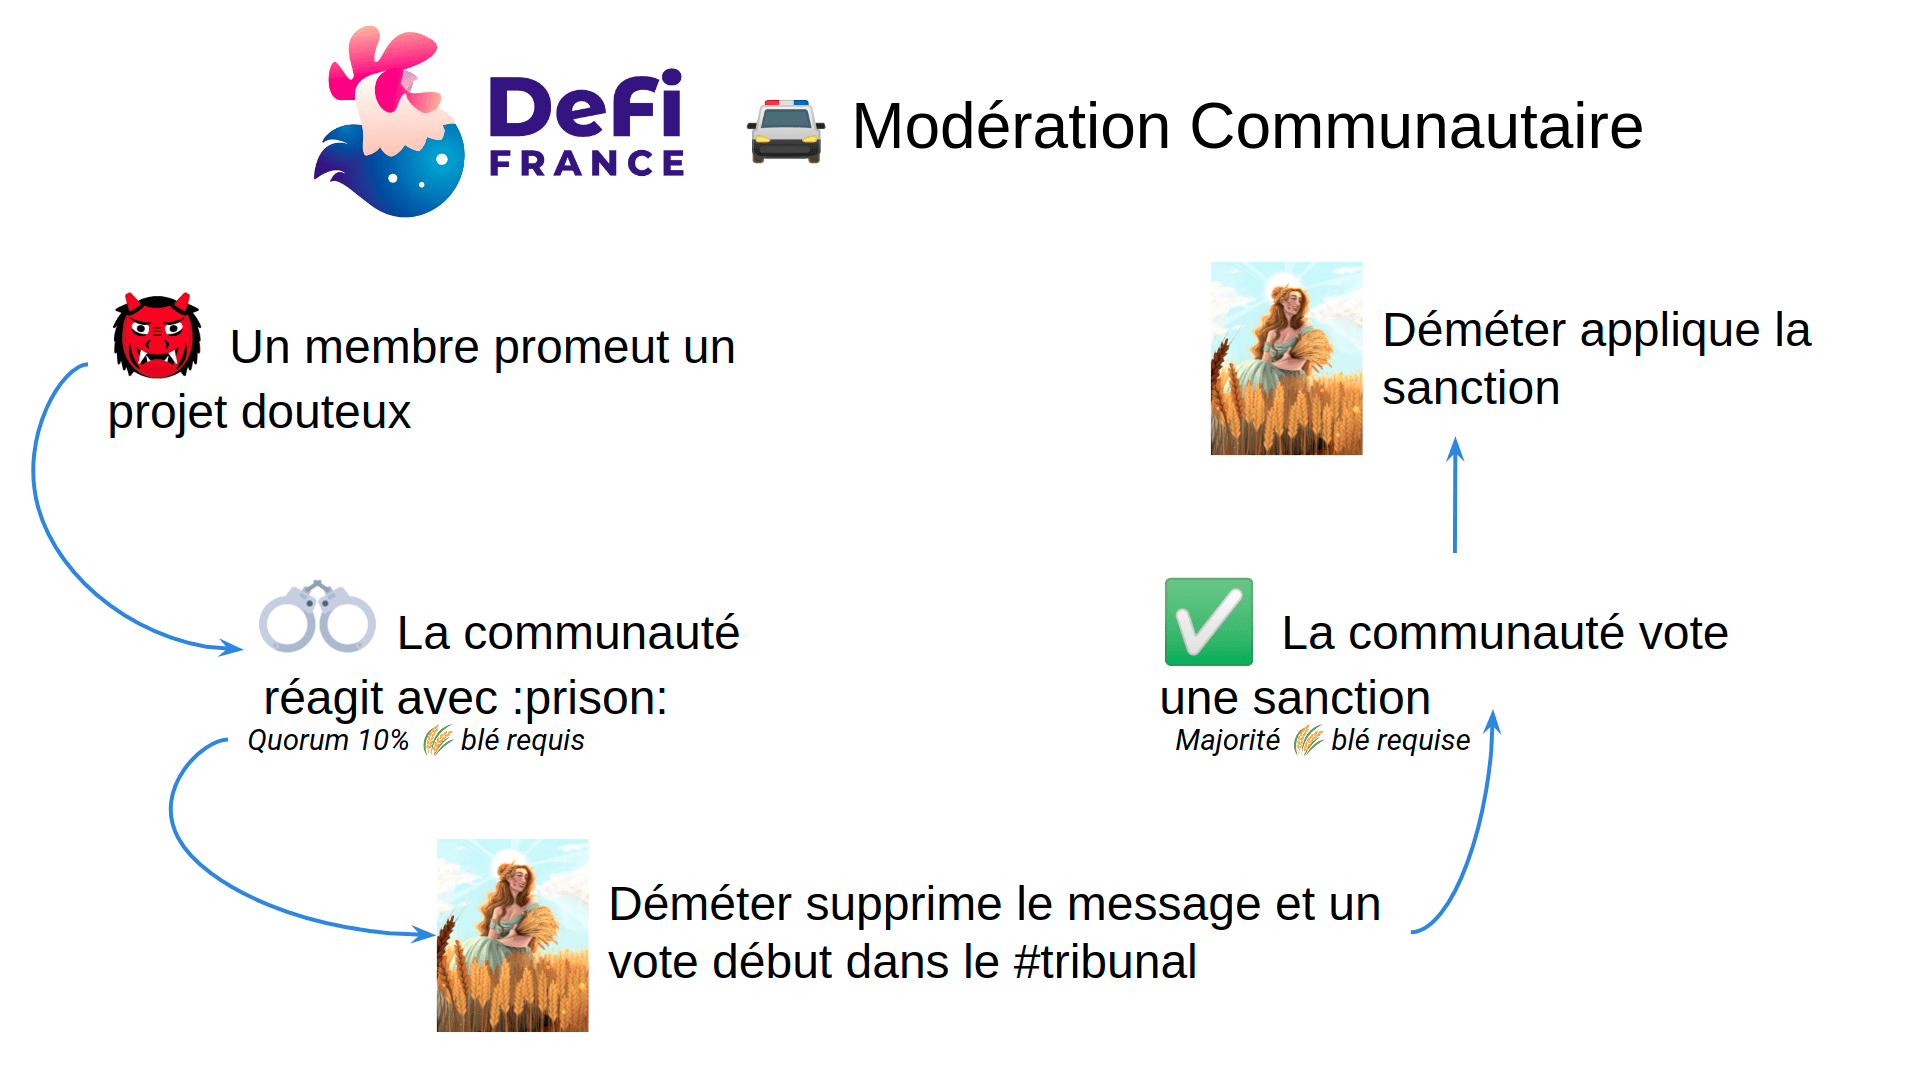 dffv2-moderation-communautaire